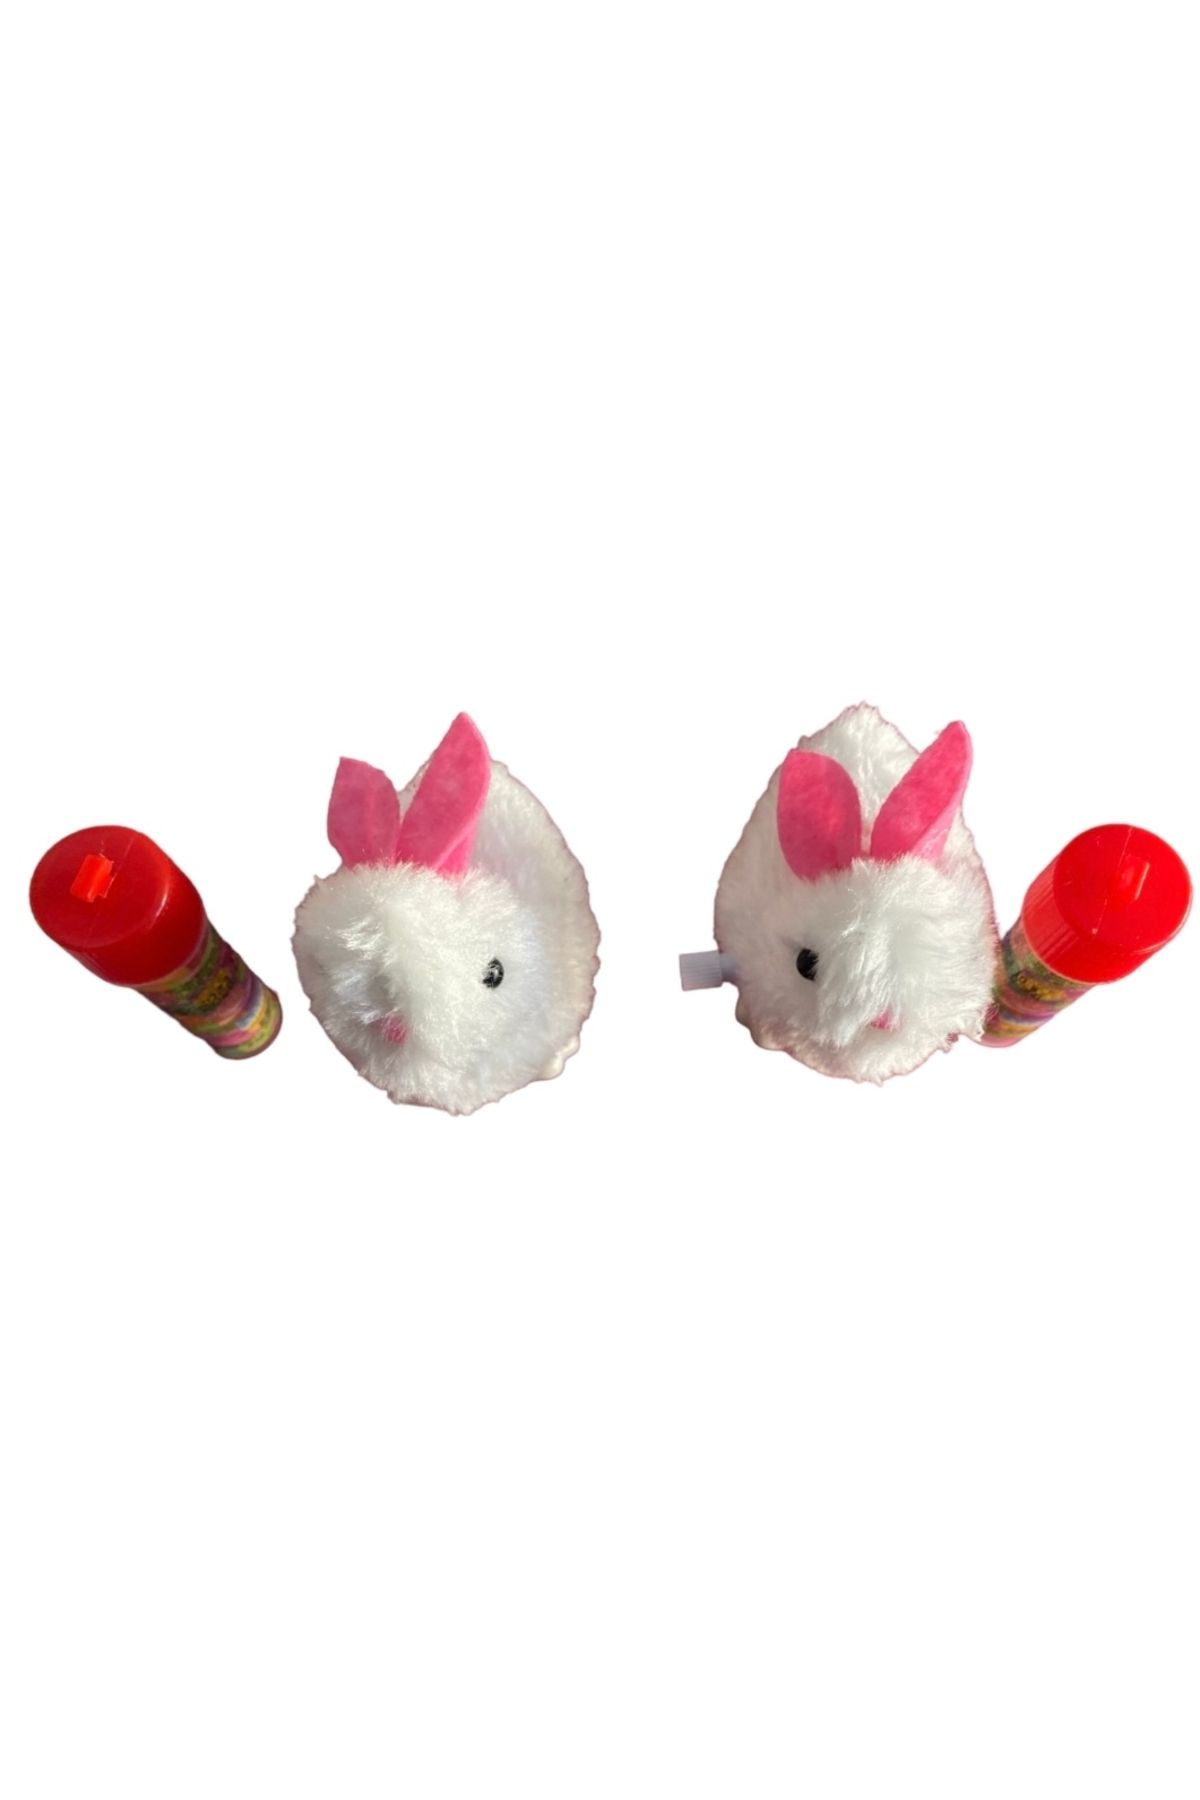 Toybox Draje Şekerli Kurmalı Tavşan Oyuncak